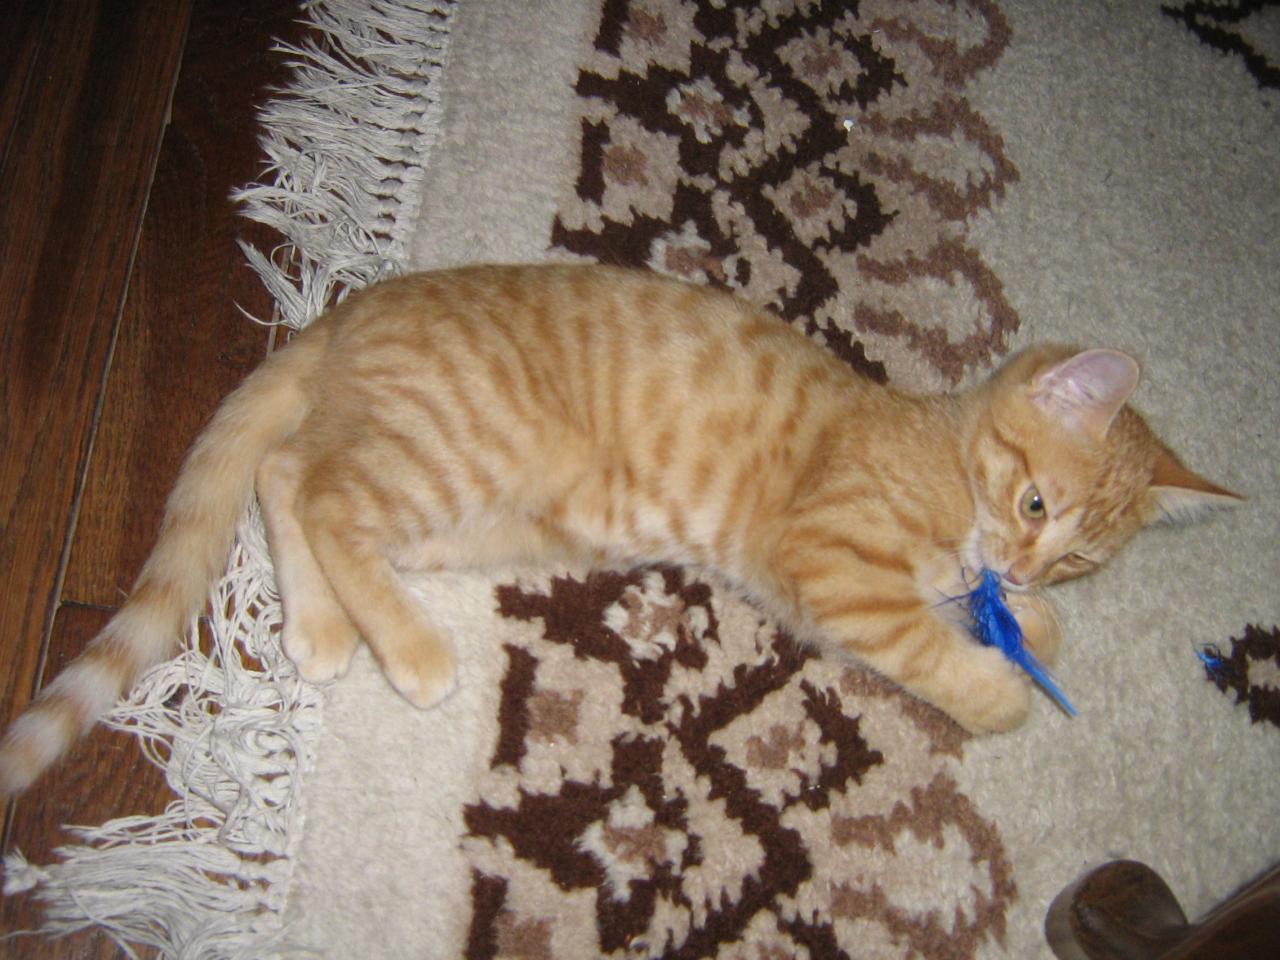 ELVIN - Né le 01/08/2009 - Adopté en Octobre 2009